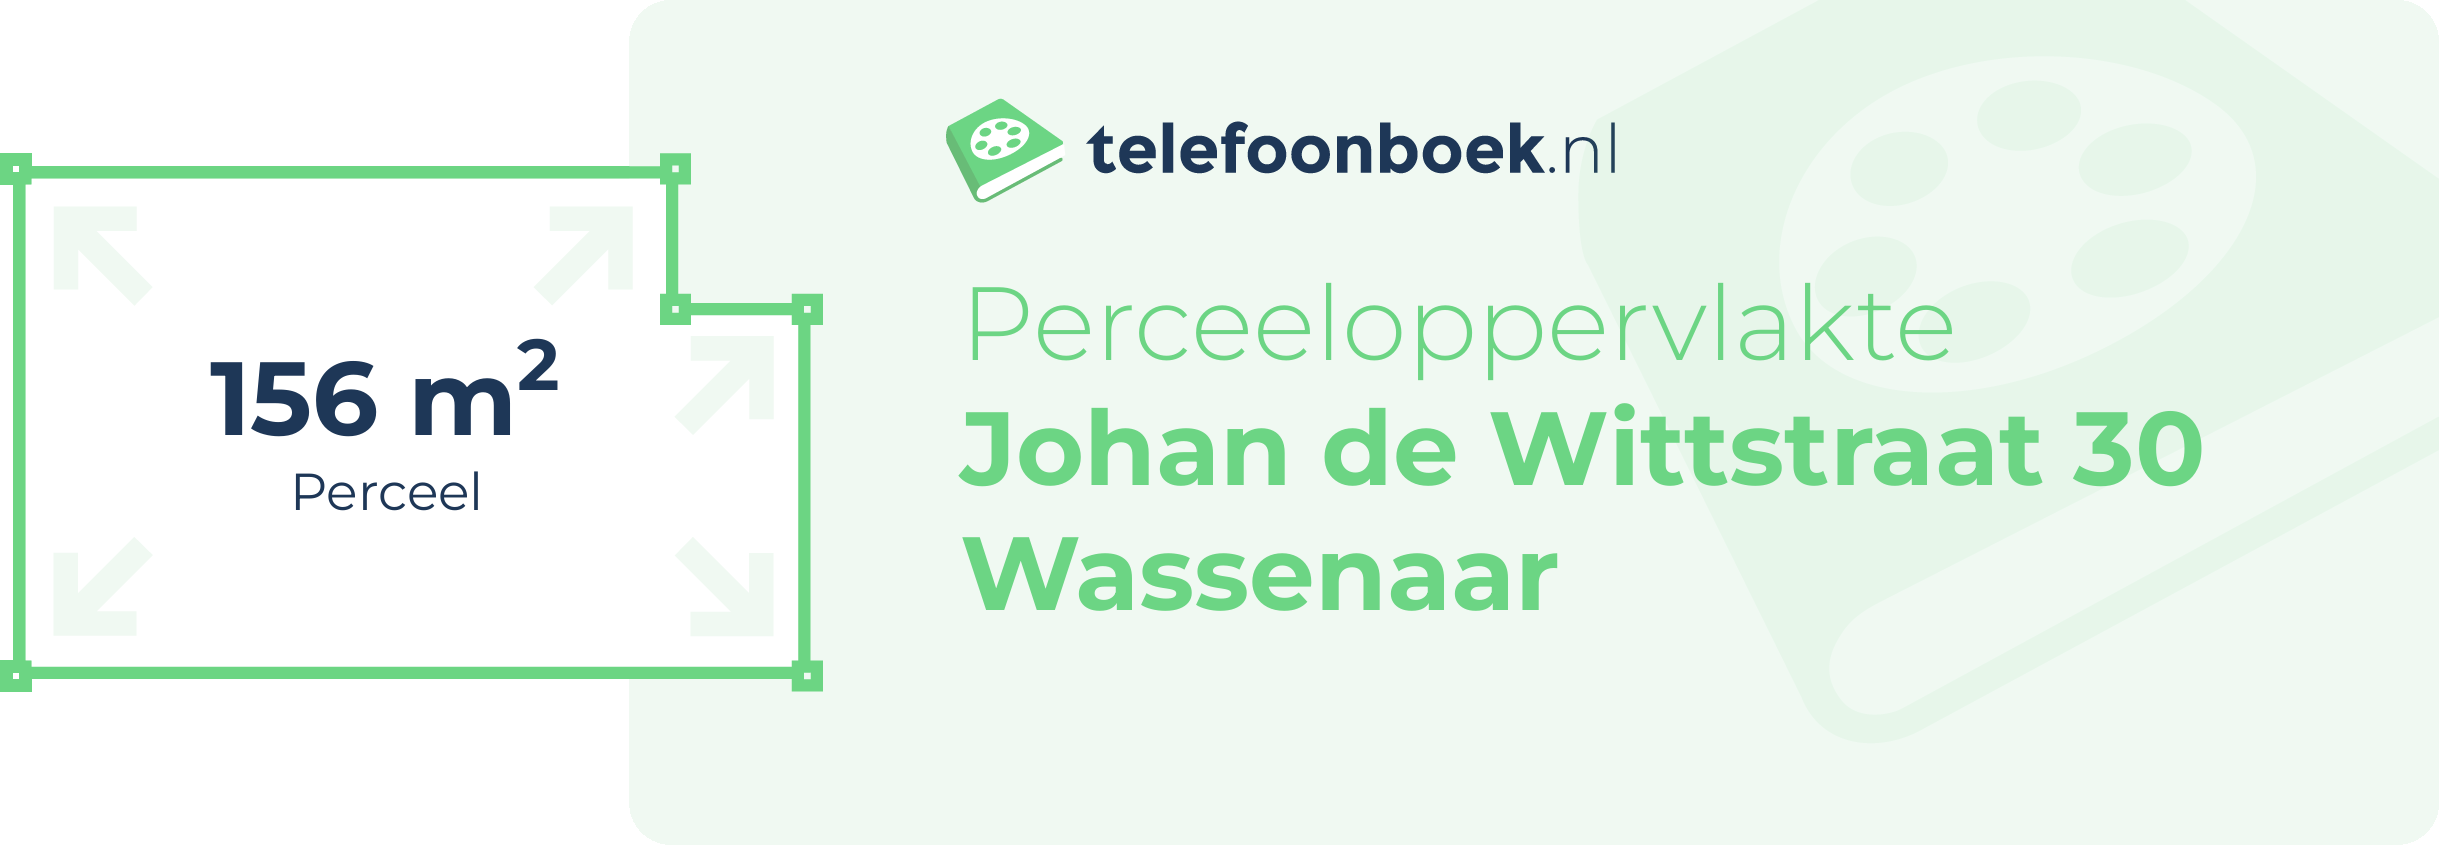 Perceeloppervlakte Johan De Wittstraat 30 Wassenaar